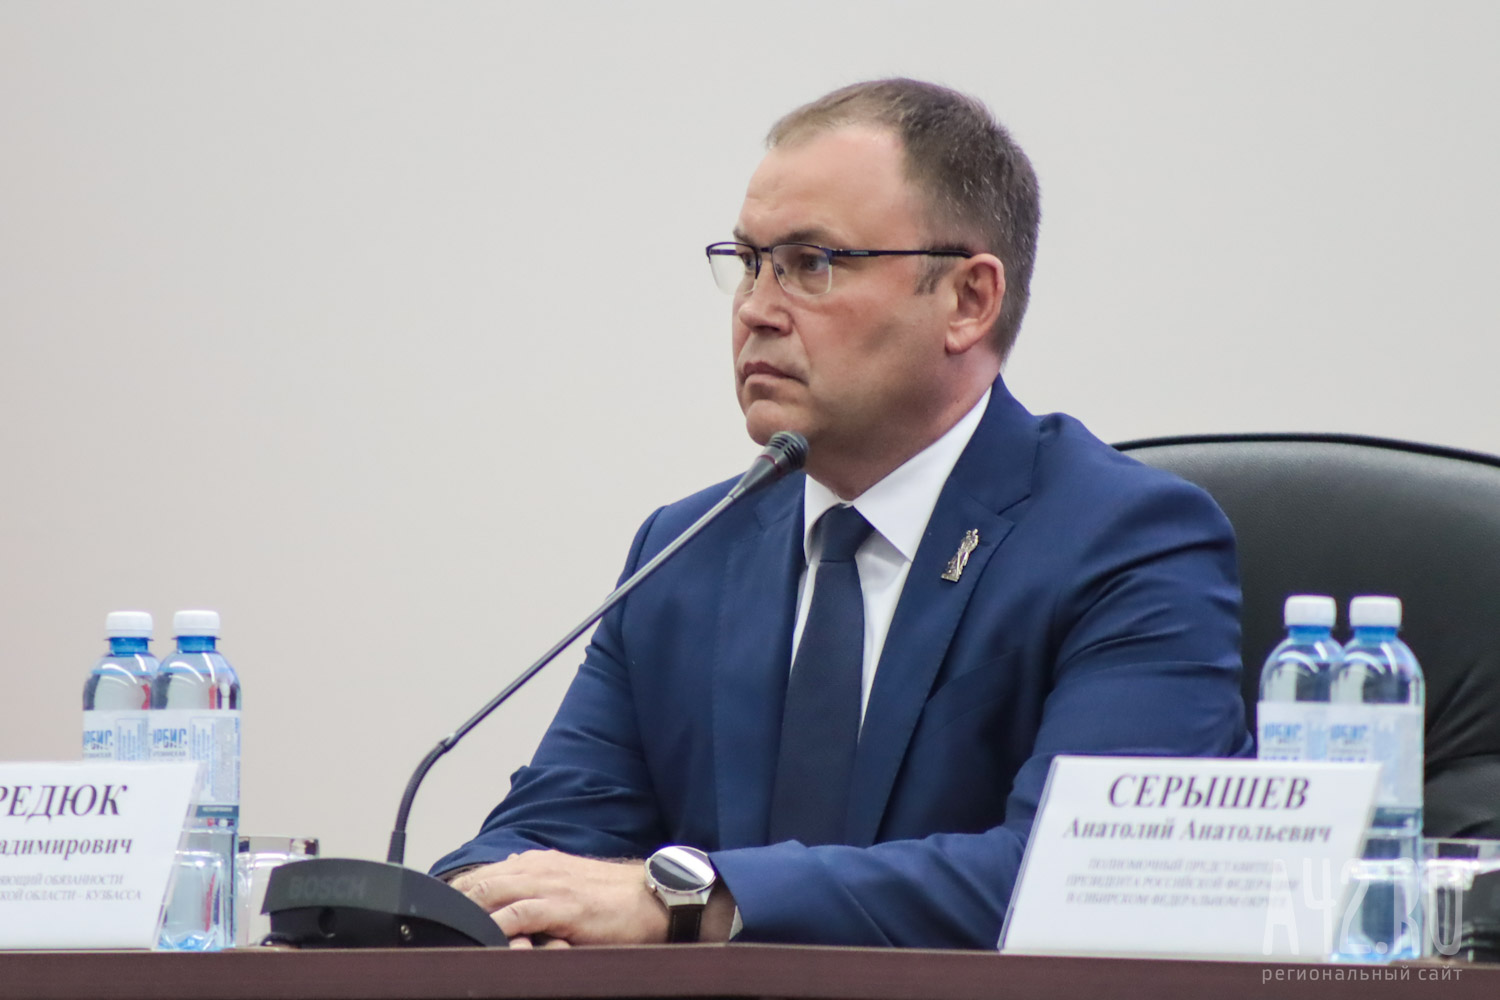 «Благодарен за высокое доверие»: врио губернатора Кузбасса Илья Середюк прокомментировал своё назначение